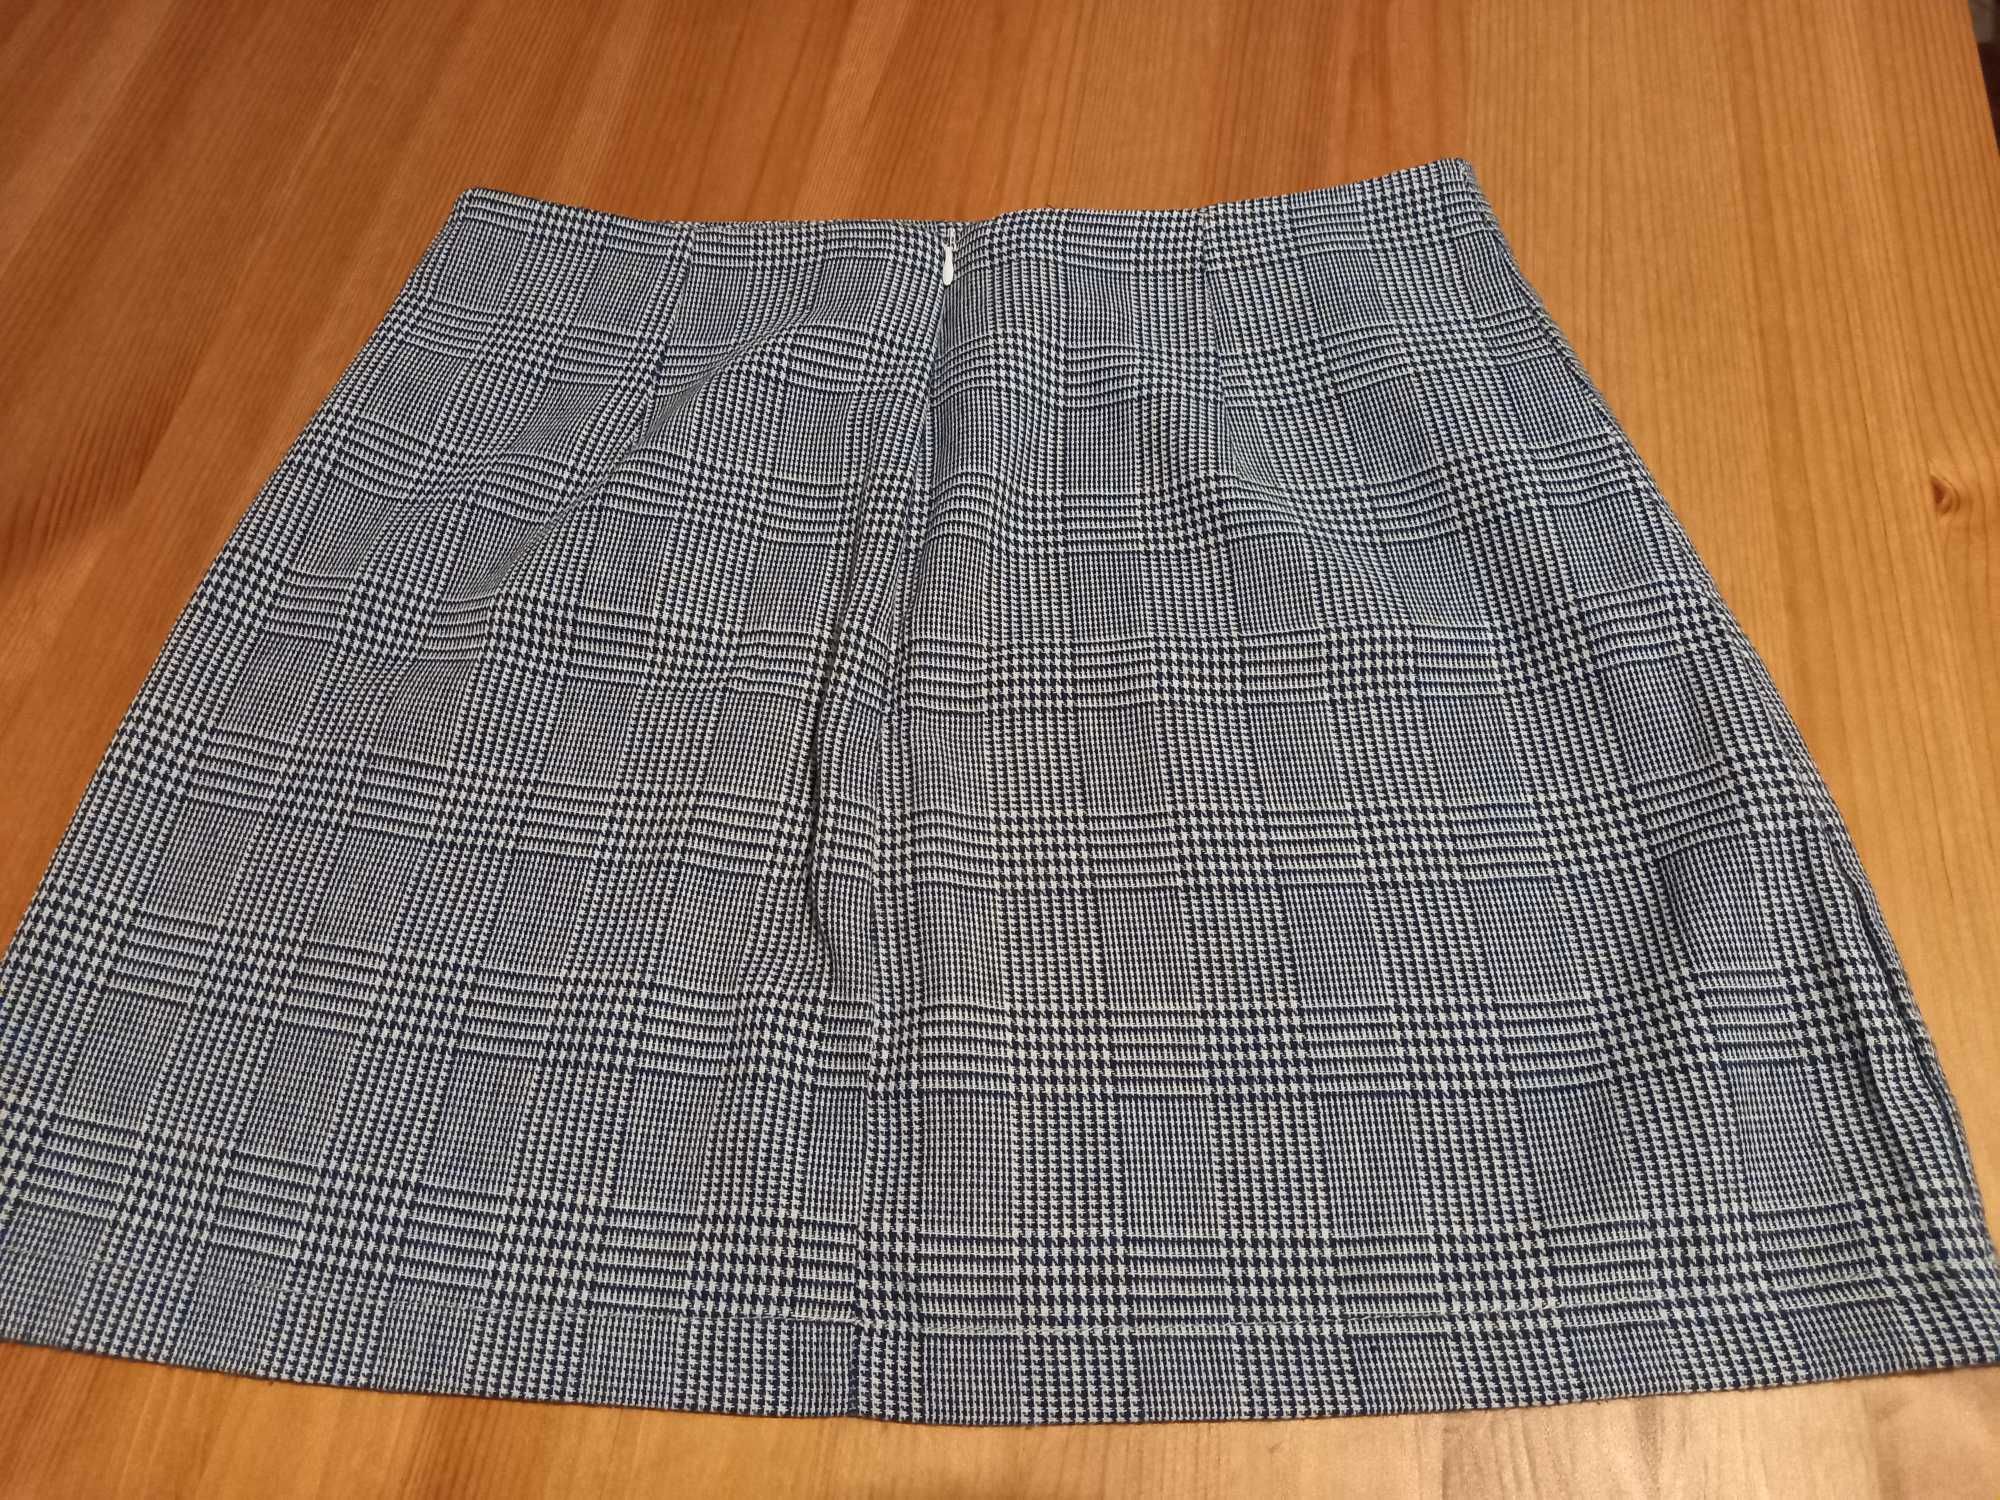 Mini saia padrão quadrados cinza e branco